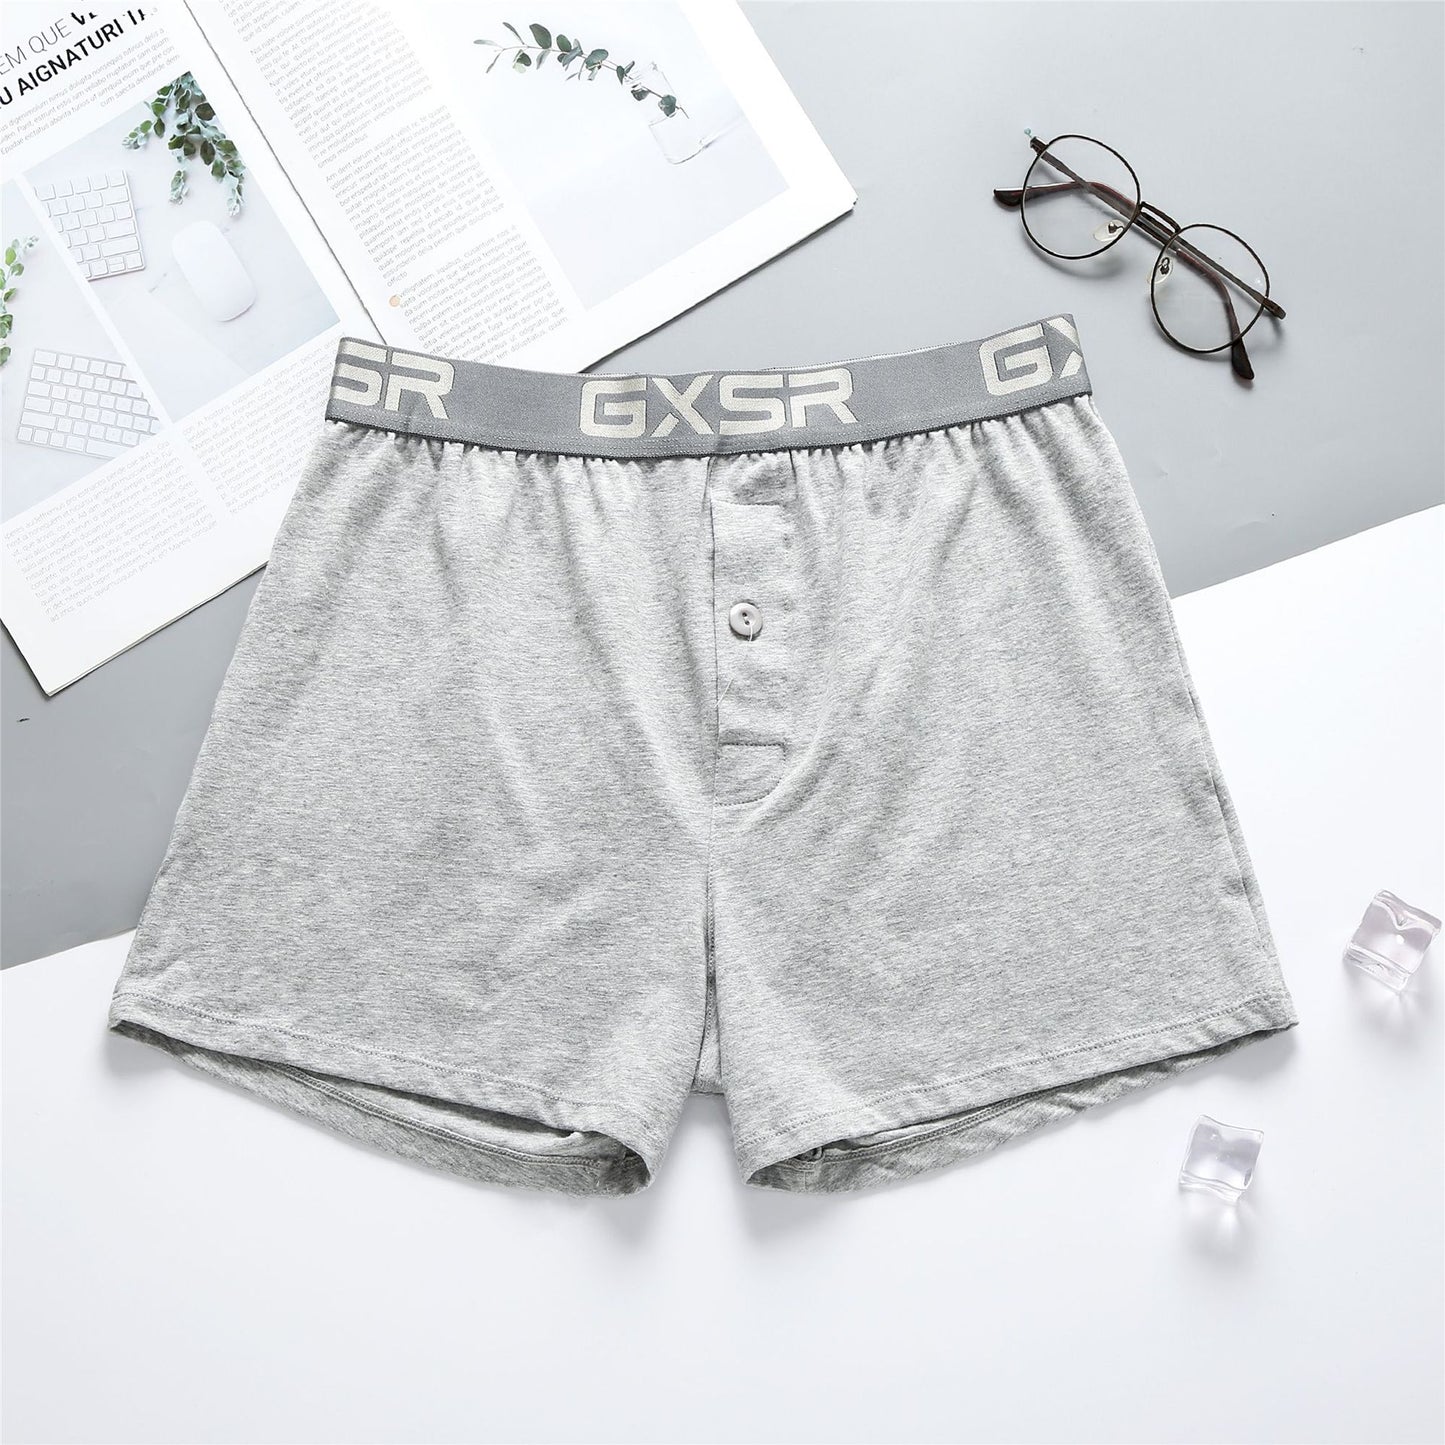 Men's low waist home pants breathable pure cotton underwear